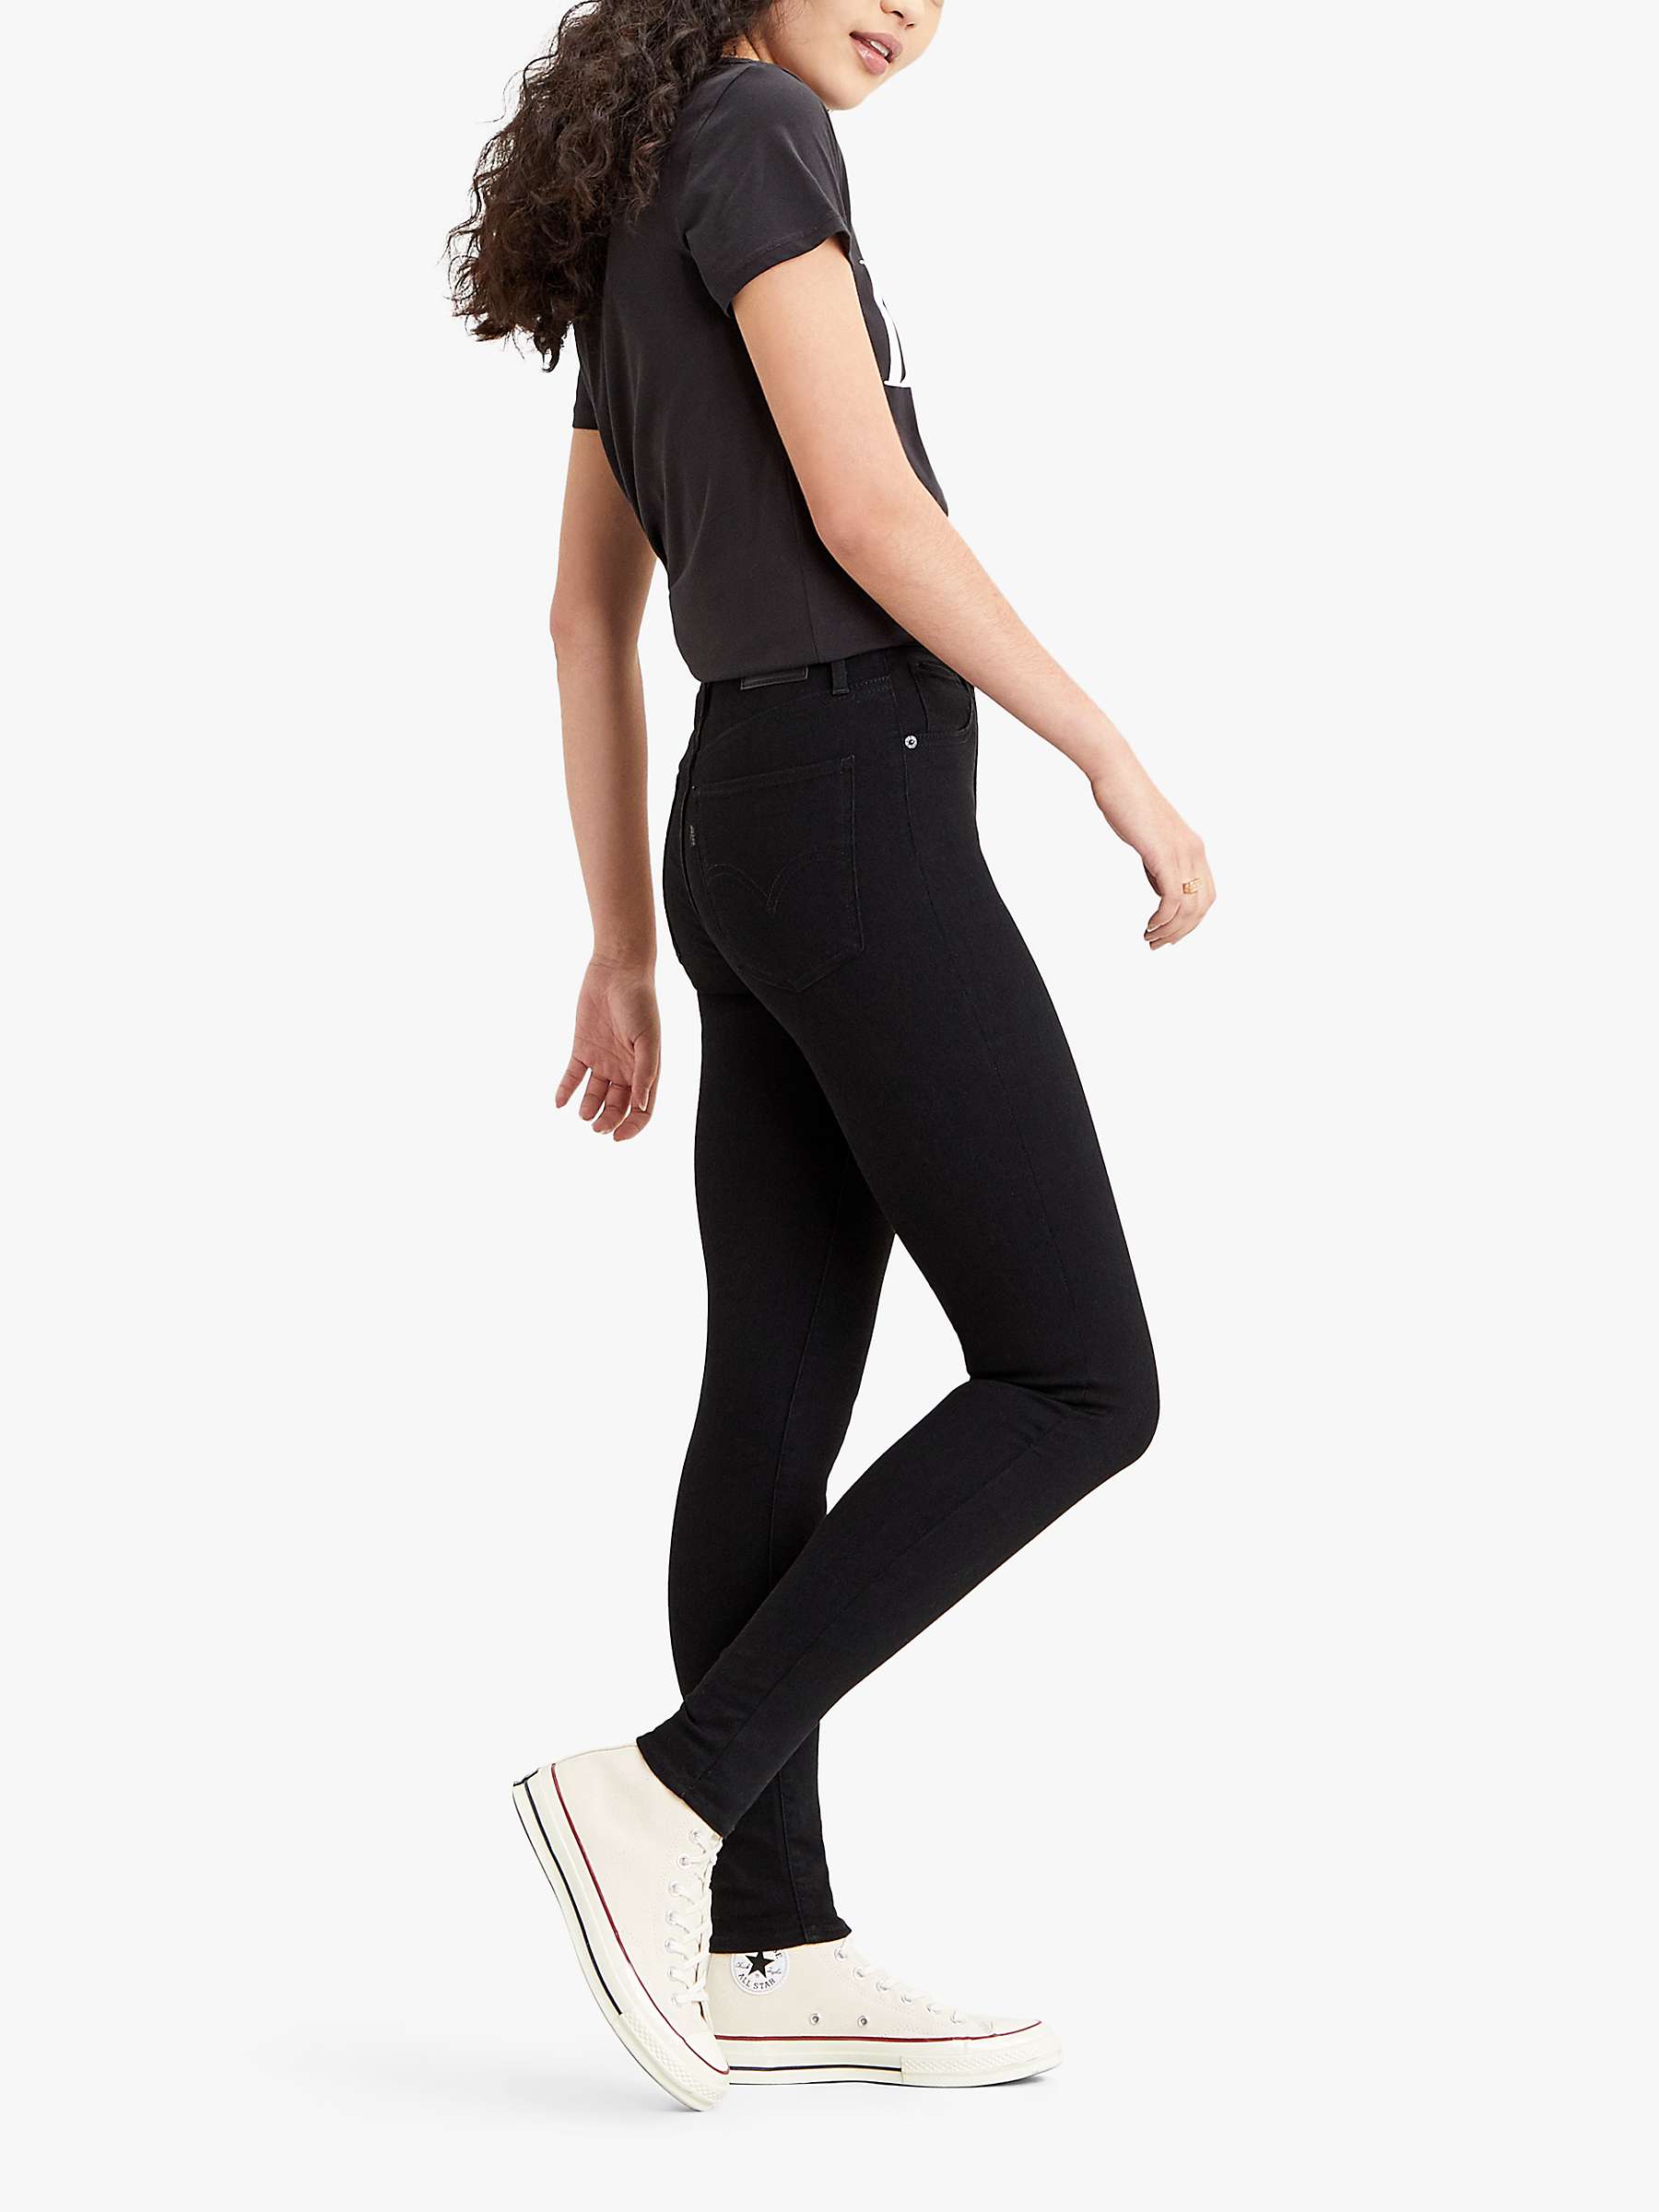 Buy Levi's Mile High Super Skinny Jeans, Black Celestial Online at johnlewis.com